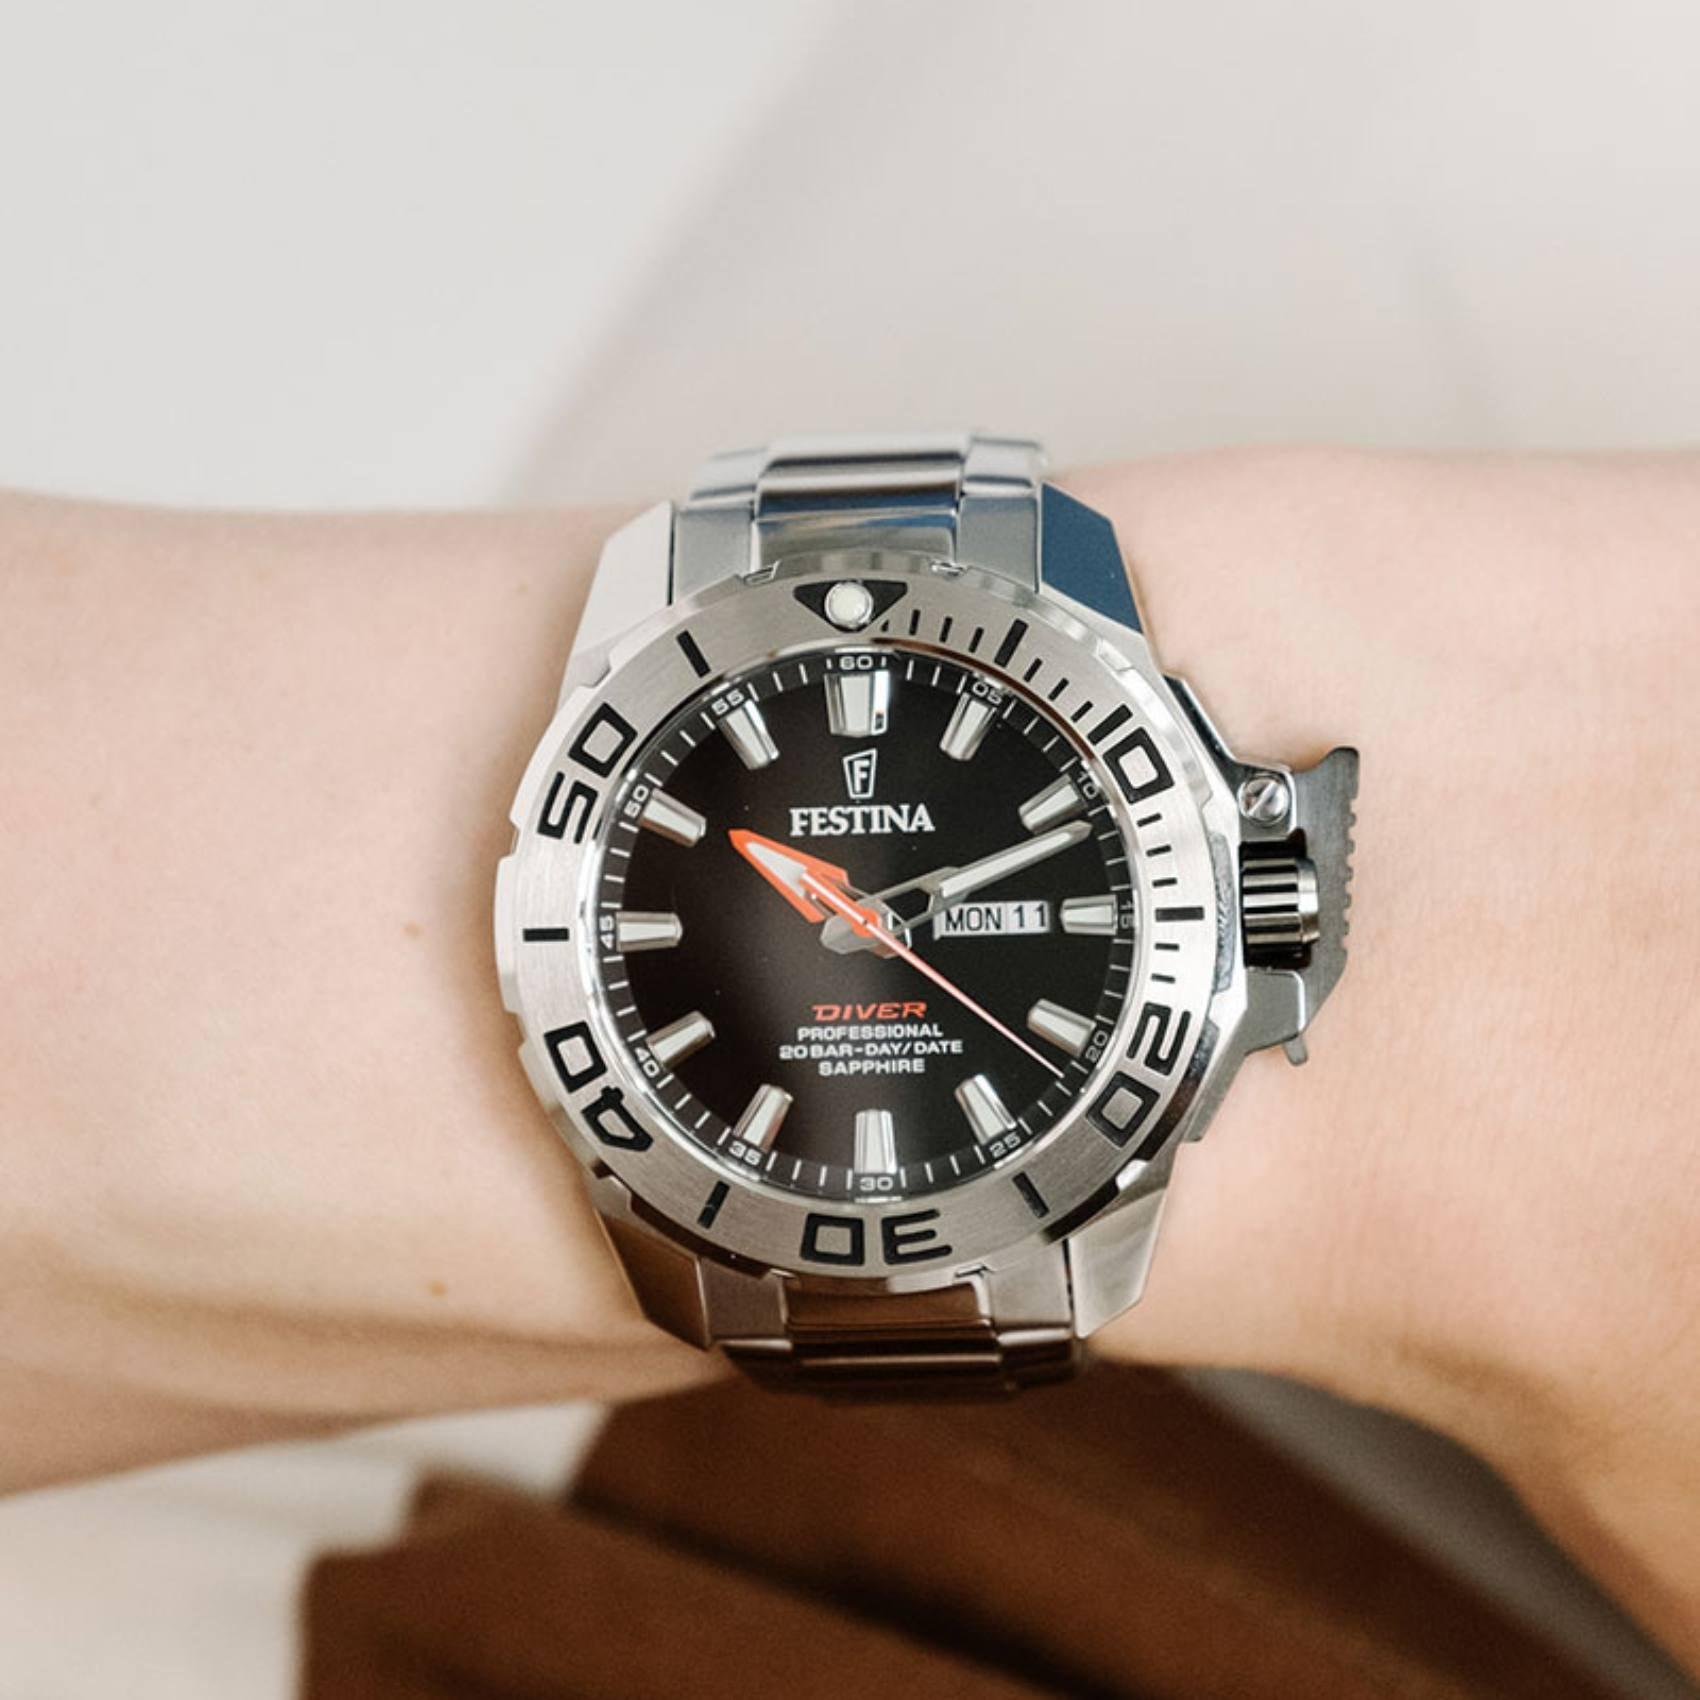 Καταδυτικό ρολόι Festina Diver Proffesional F20665/4 με ασημί μπρασελέ, μαύρο καντραν με ένδειξη ημερομηνίας, στεγανότητα 20 ATM και κάσα με διάμετρο 45m.